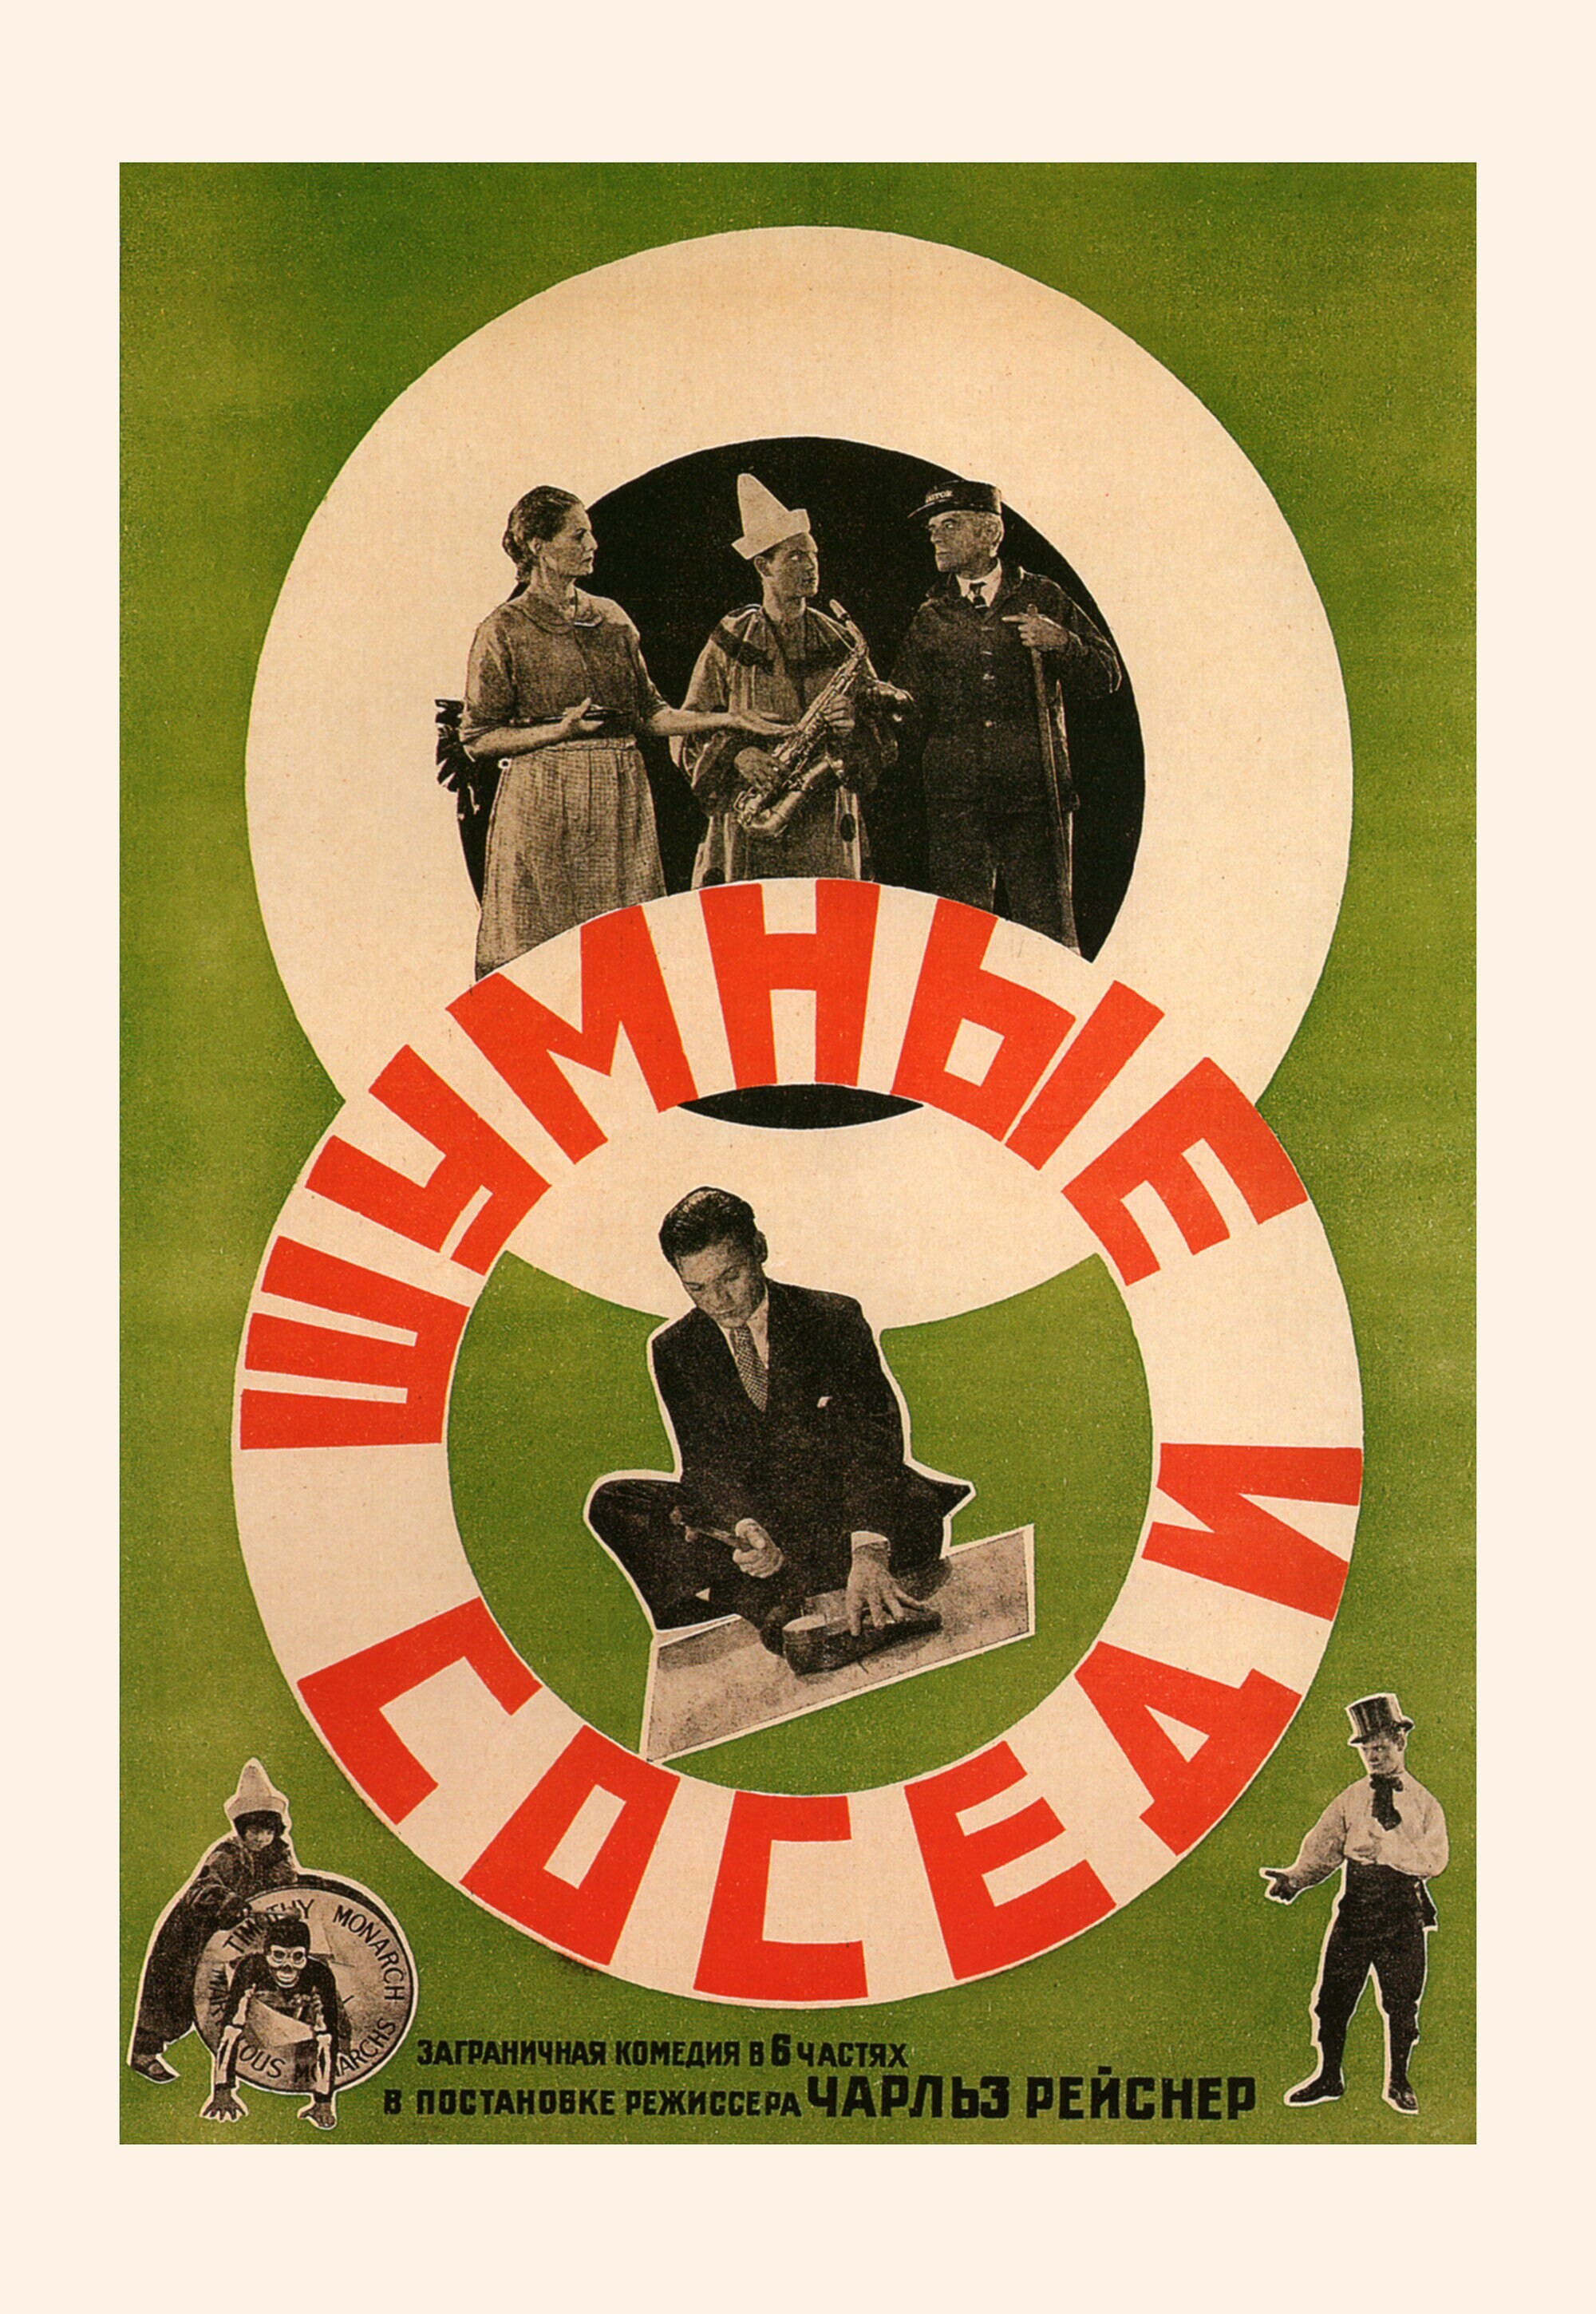 Шумные соседи, 1929 год, режиссёр Чарльз Рейснер, плакат к фильму, автор неизвестен (авангардное советское искусство, 1920-е)